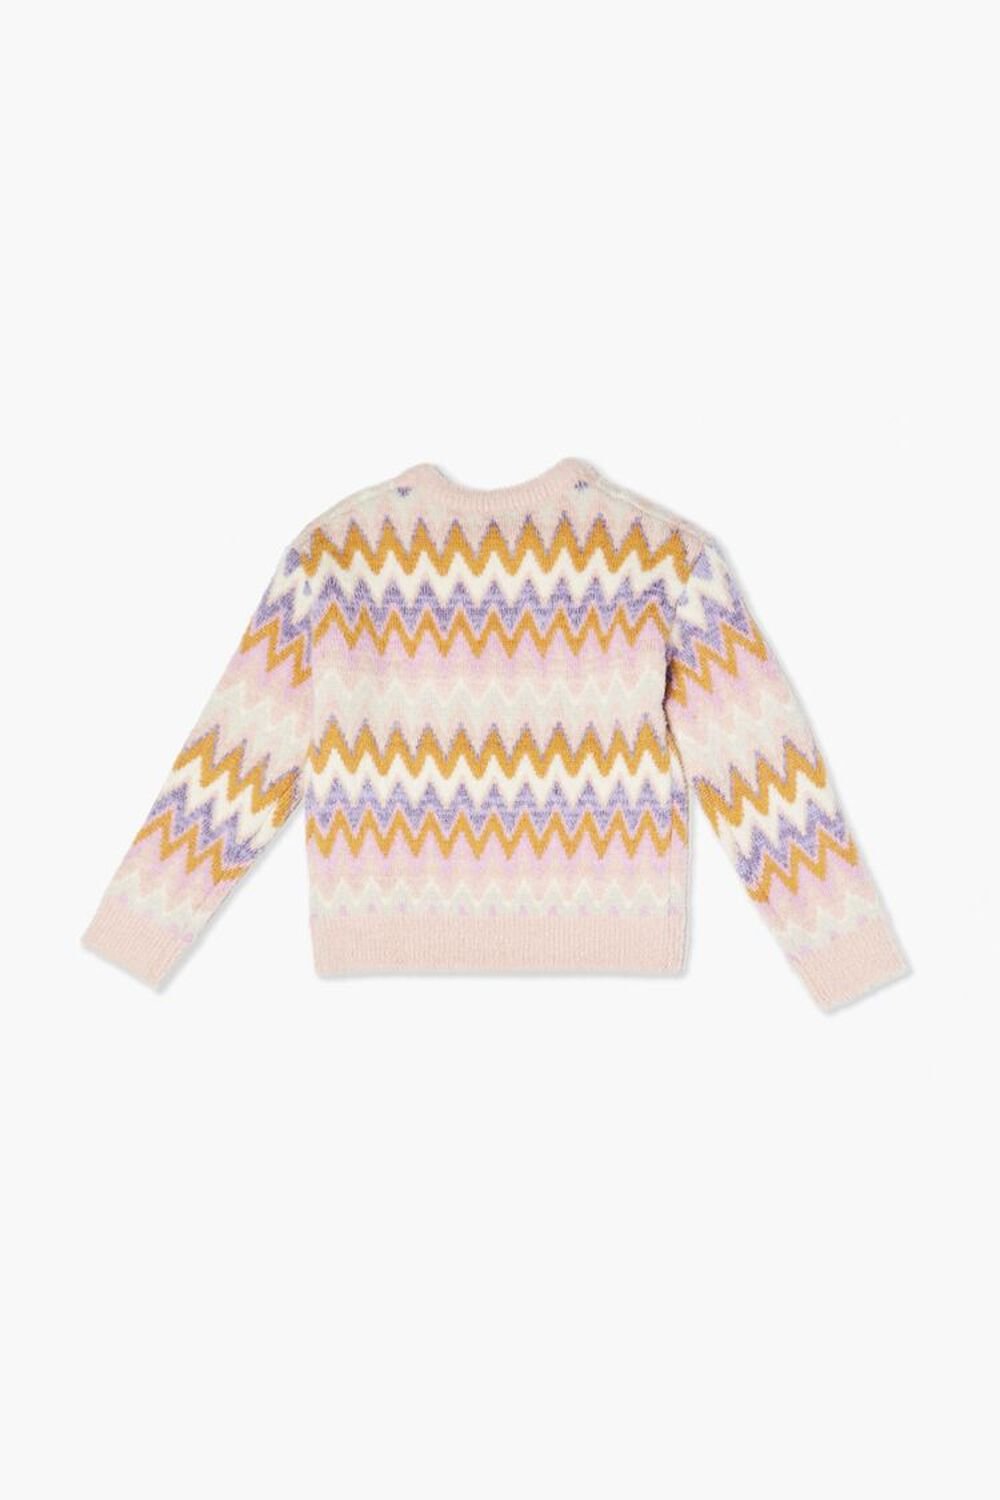 MAUVE/MULTI Girls Chevron Fuzzy-Knit Sweater (Kids), image 2